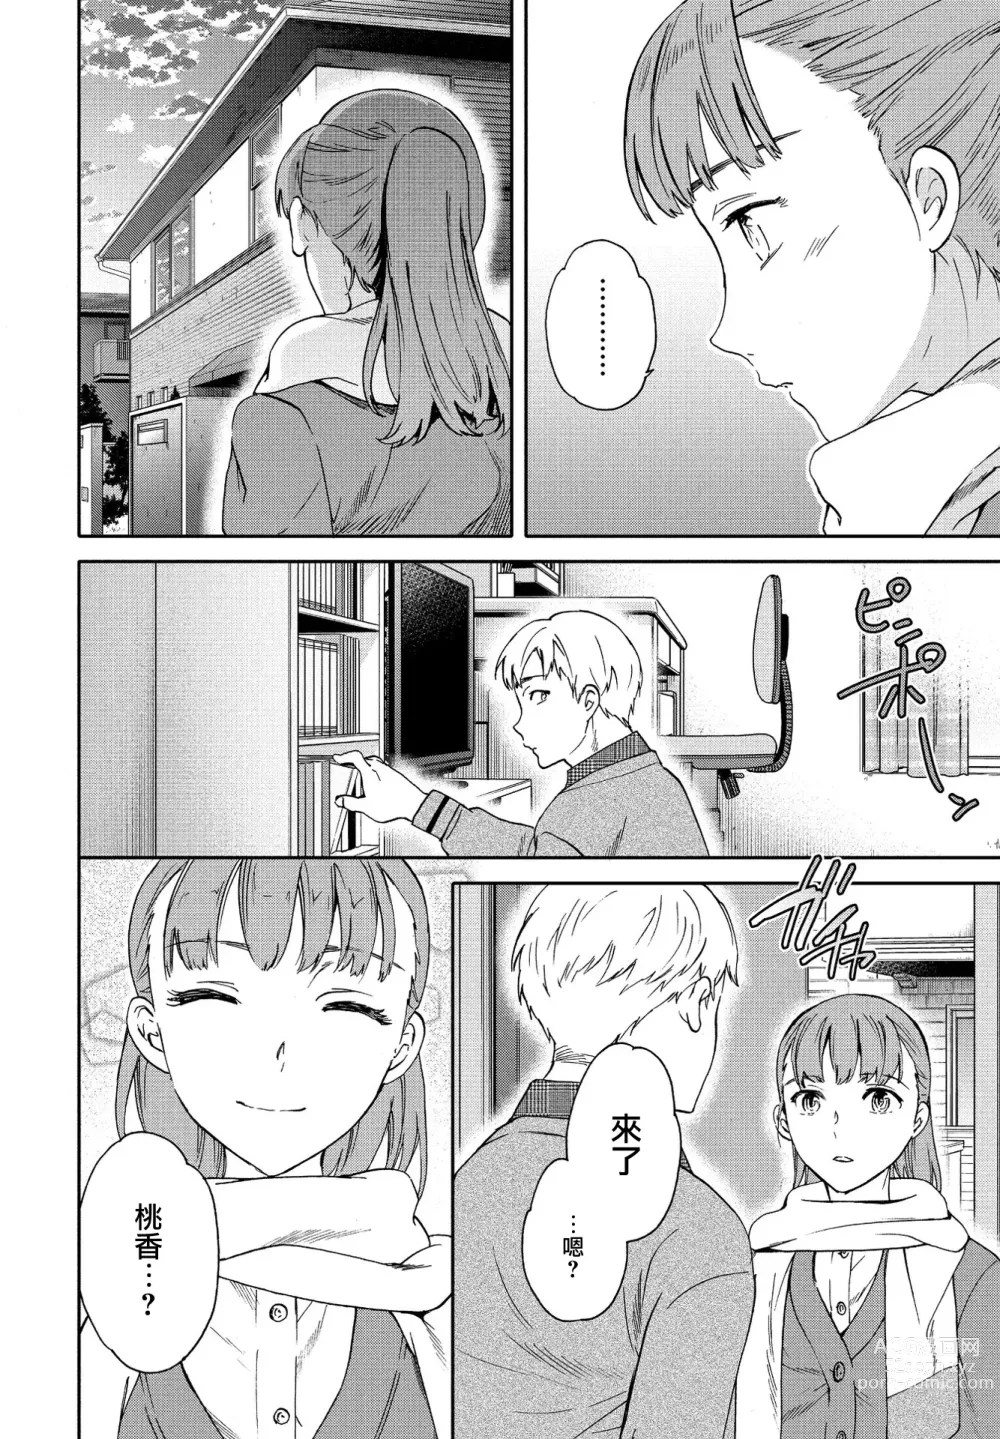 Page 6 of manga Catch Up!